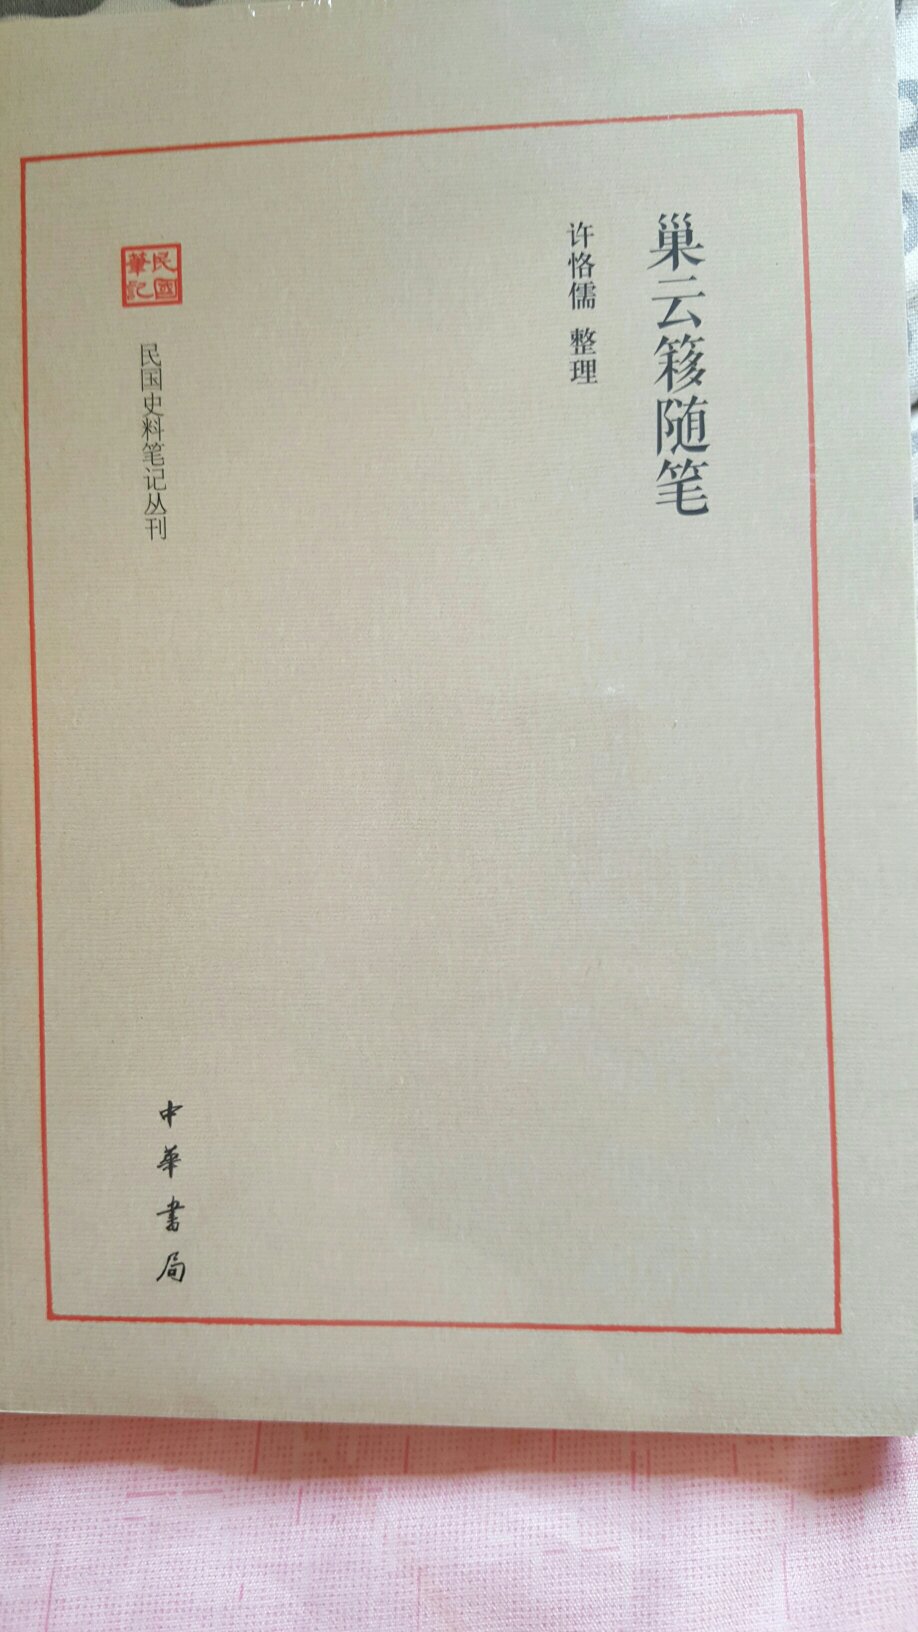 许先生日记已购入，中华的民国史料笔记也值得拥有。